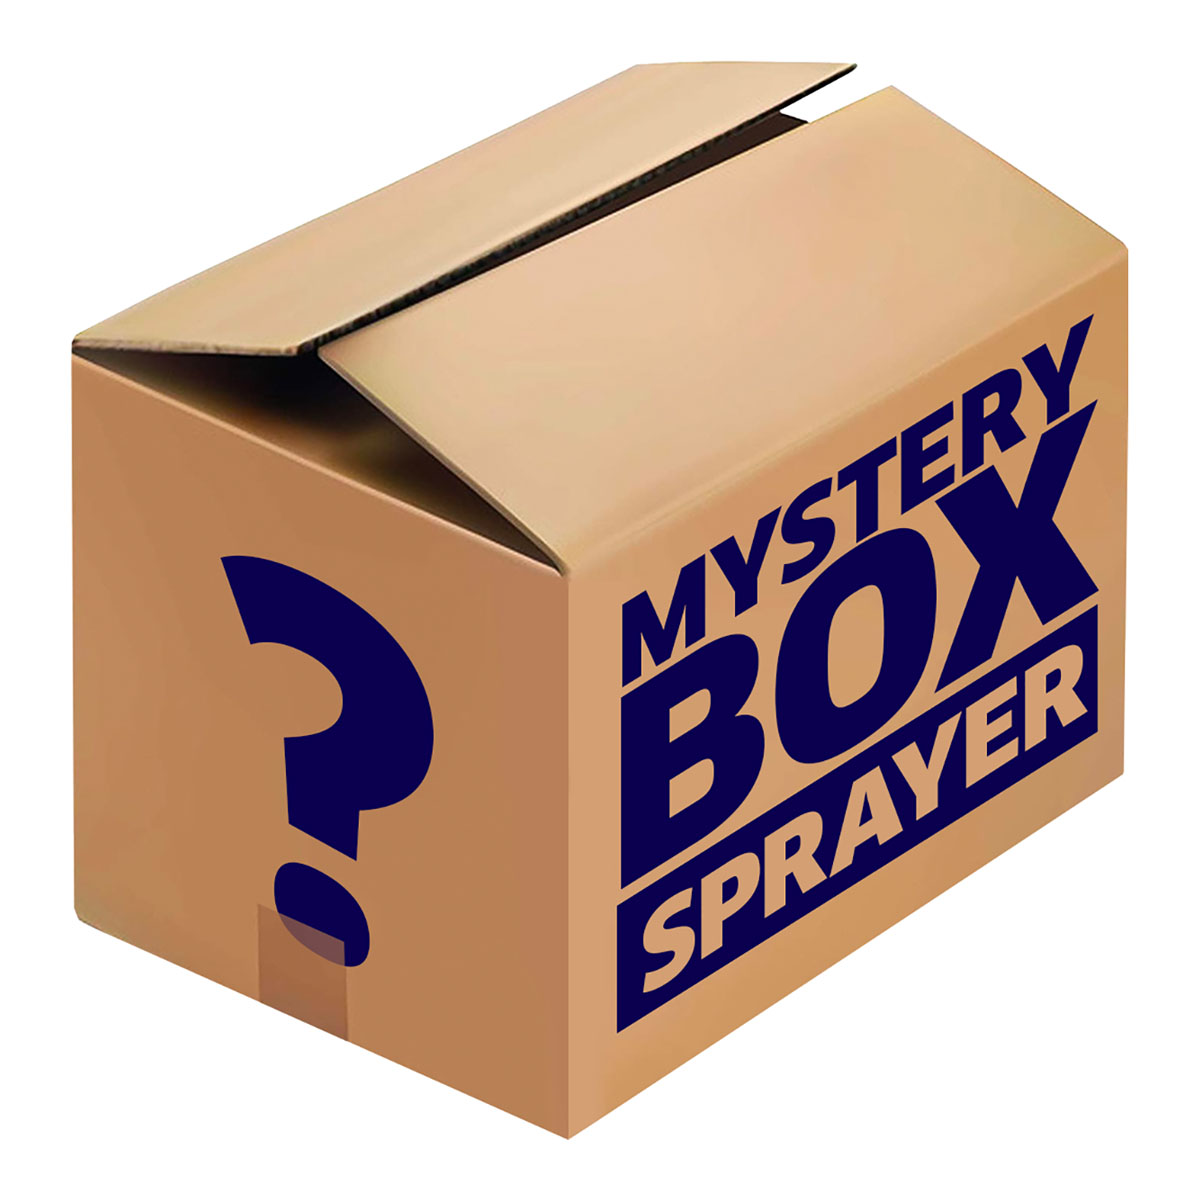 Mystery Box Sprayer